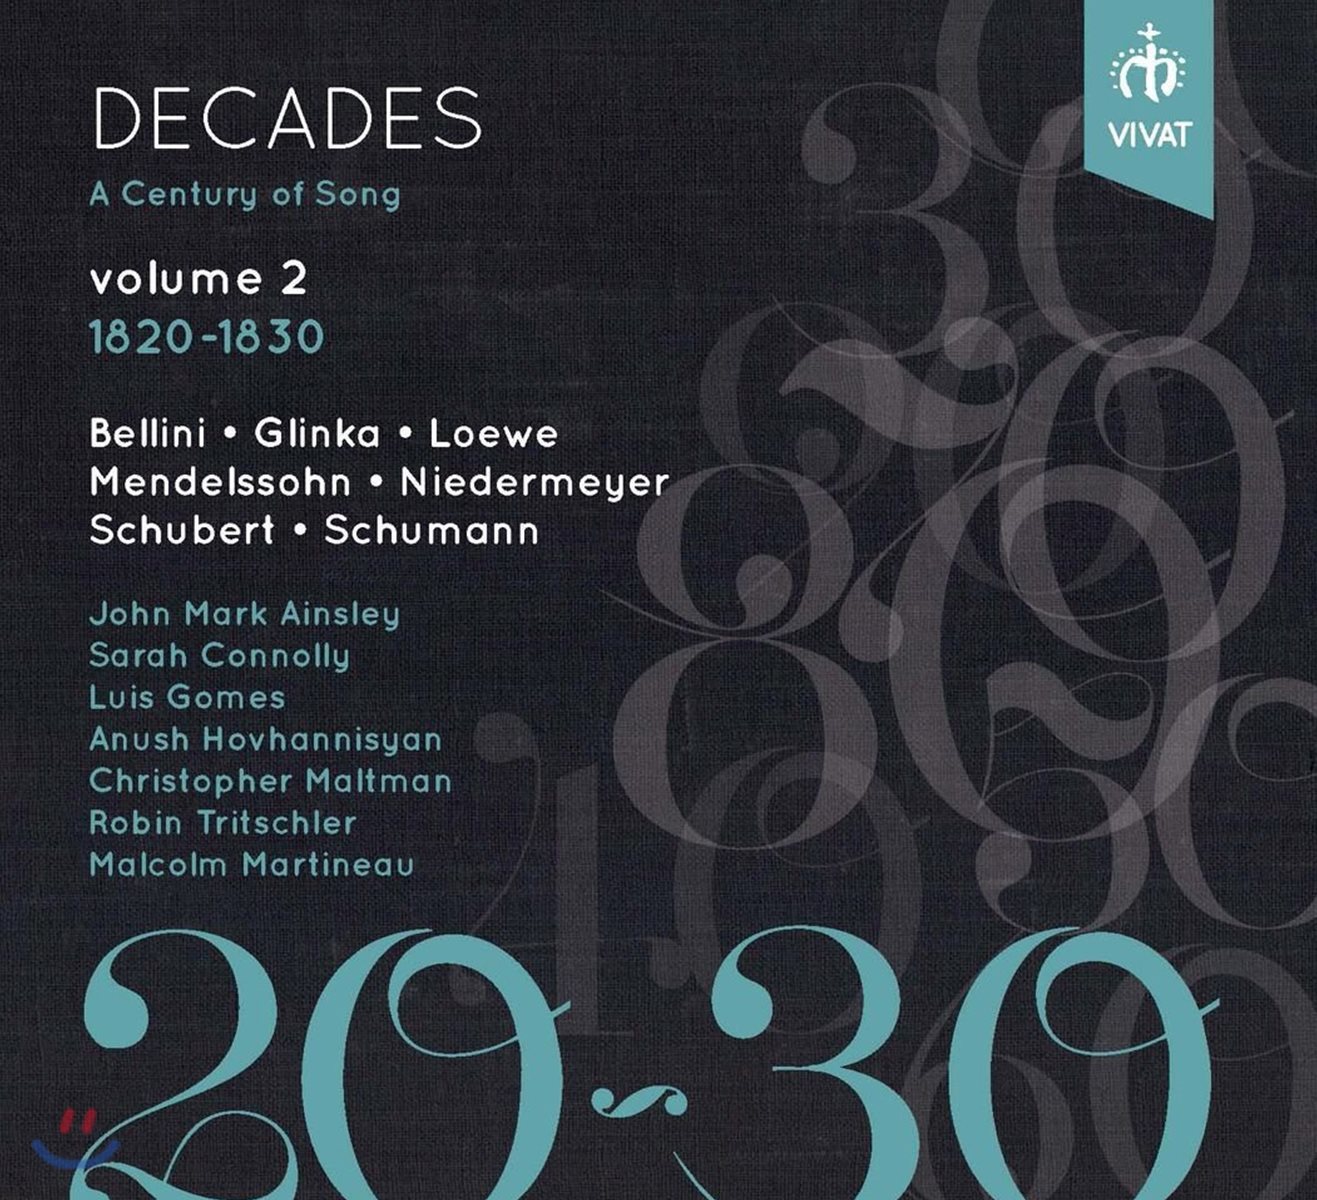 세기의 가곡들 (데케이즈: 센추리 오브 송) 2집 - 1820-1830: 벨리니 / 글린카 / 멘델스존 / 니더마이어 외 (Decades: A Century of Song Vol. 2 - Bellini / Glinka / Mendelssohn / Niedermeyer)